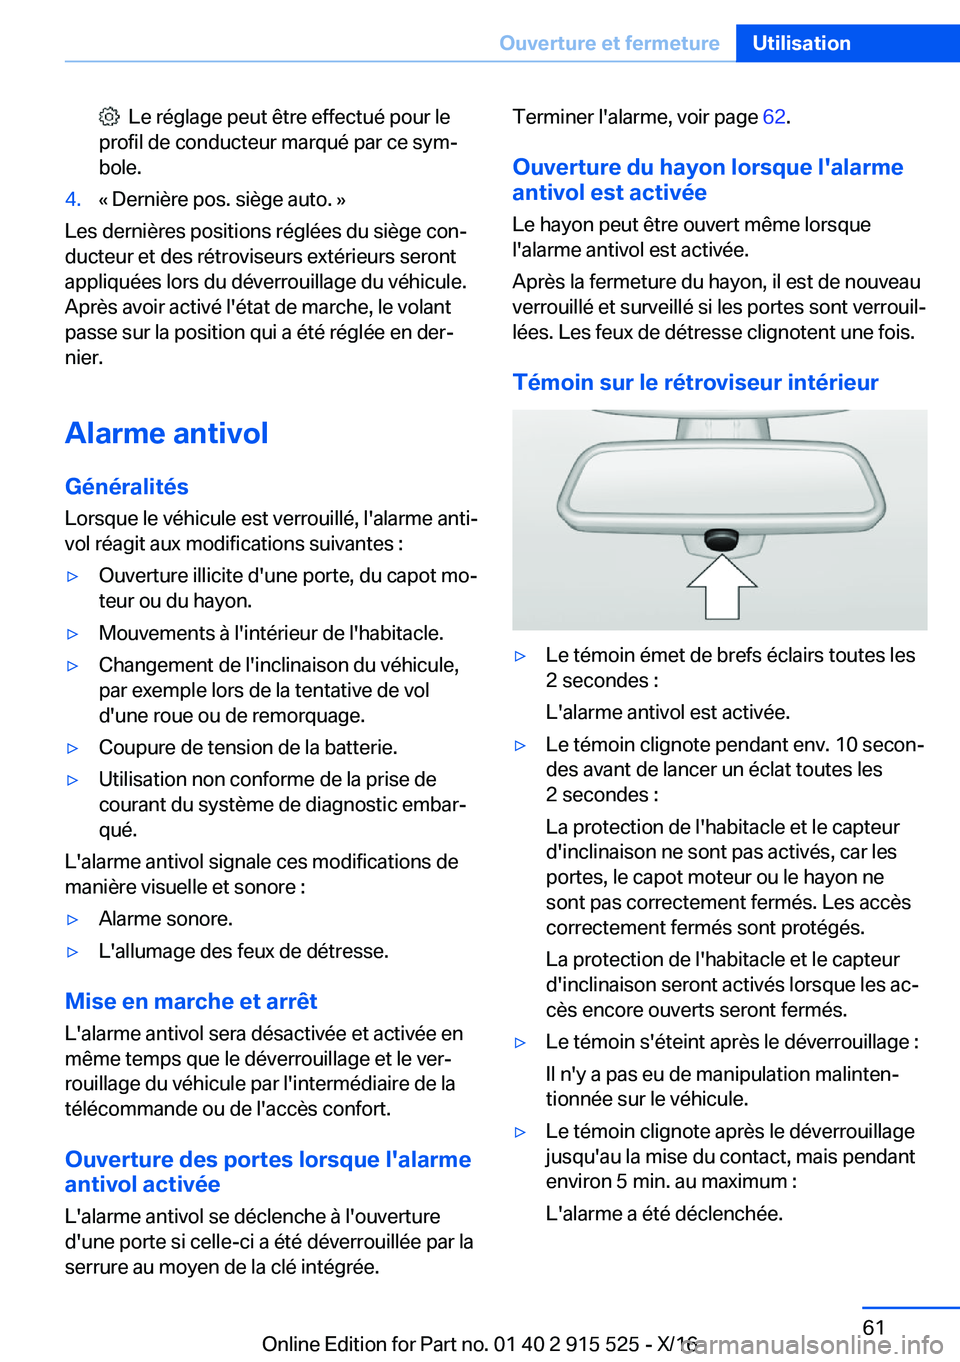 BMW X5 2017  Notices Demploi (in French) � � �L�e� �r�é�g�l�a�g�e� �p�e�u�t� �ê�t�r�e� �e�f�f�e�c�t�u�é� �p�o�u�r� �l�e
�p�r�o�f�i�l� �d�e� �c�o�n�d�u�c�t�e�u�r� �m�a�r�q�u�é� �p�a�r� �c�e� �s�y�mj �b�o�l�e�.�4�.�k� �D�e�r�n�i�è�r�e� �